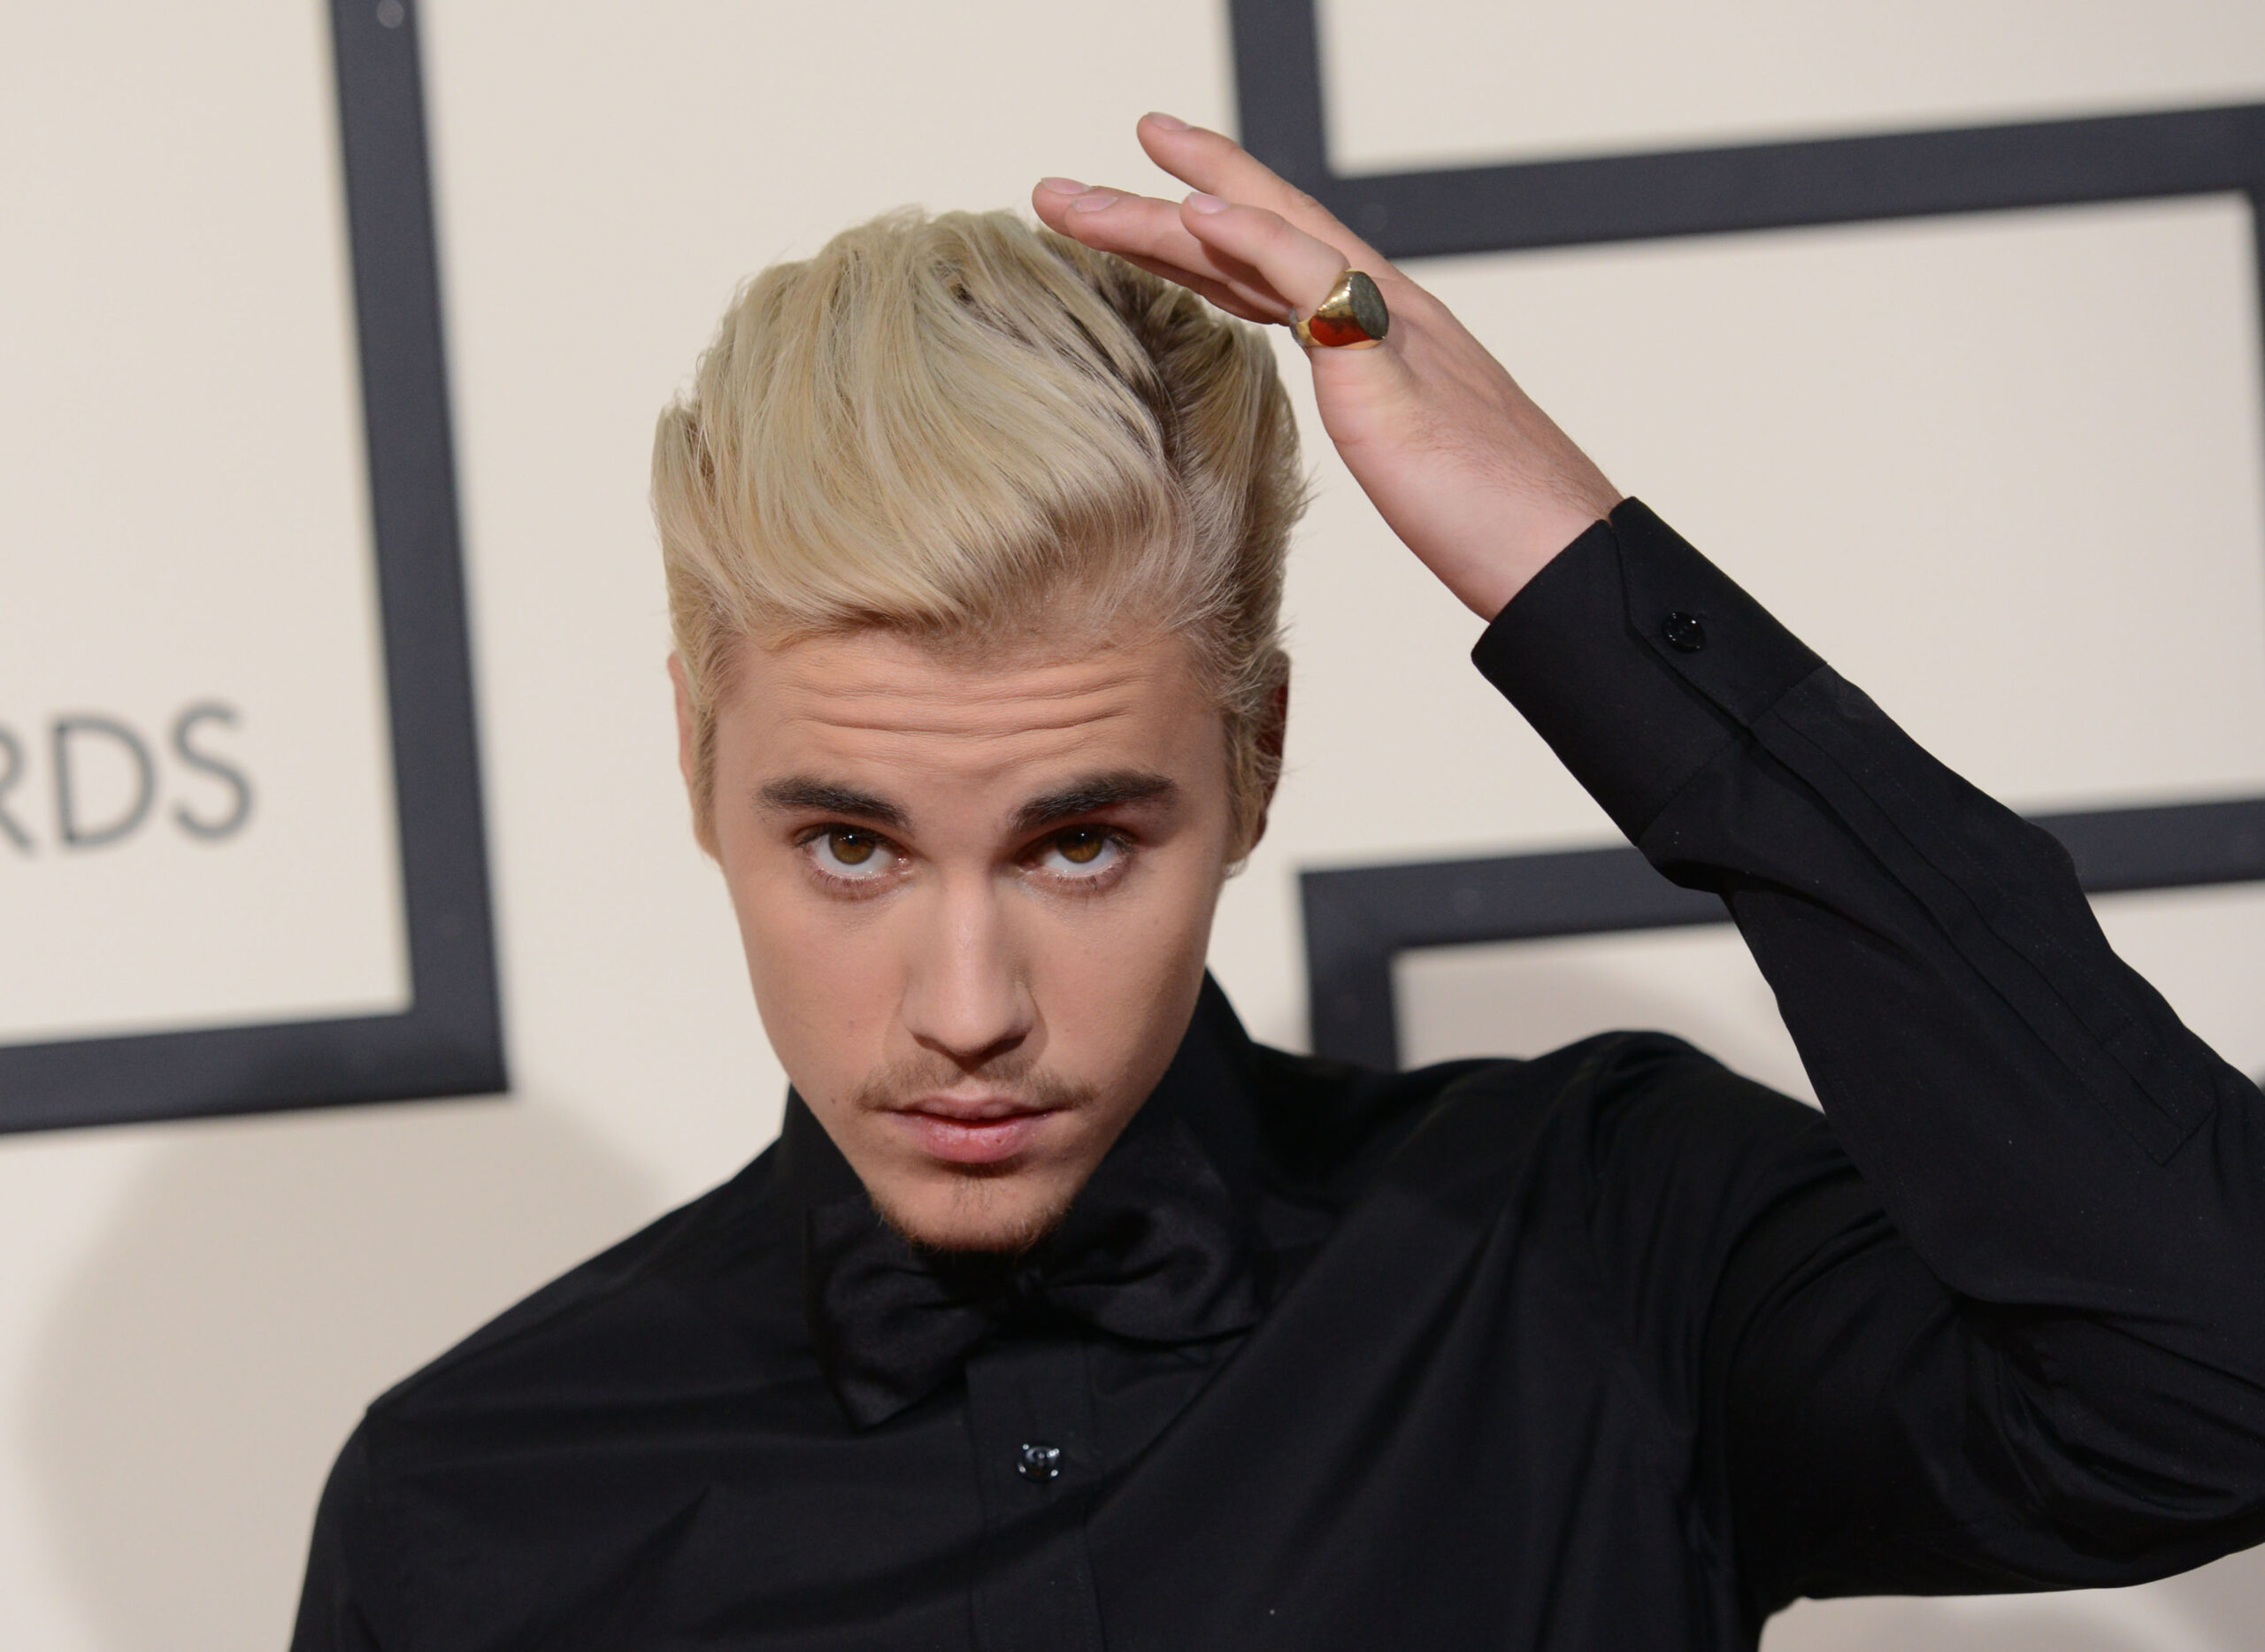 FOTO: Justin Bieber și-a schimbat look-ul. Mulți au spus că e hipster!